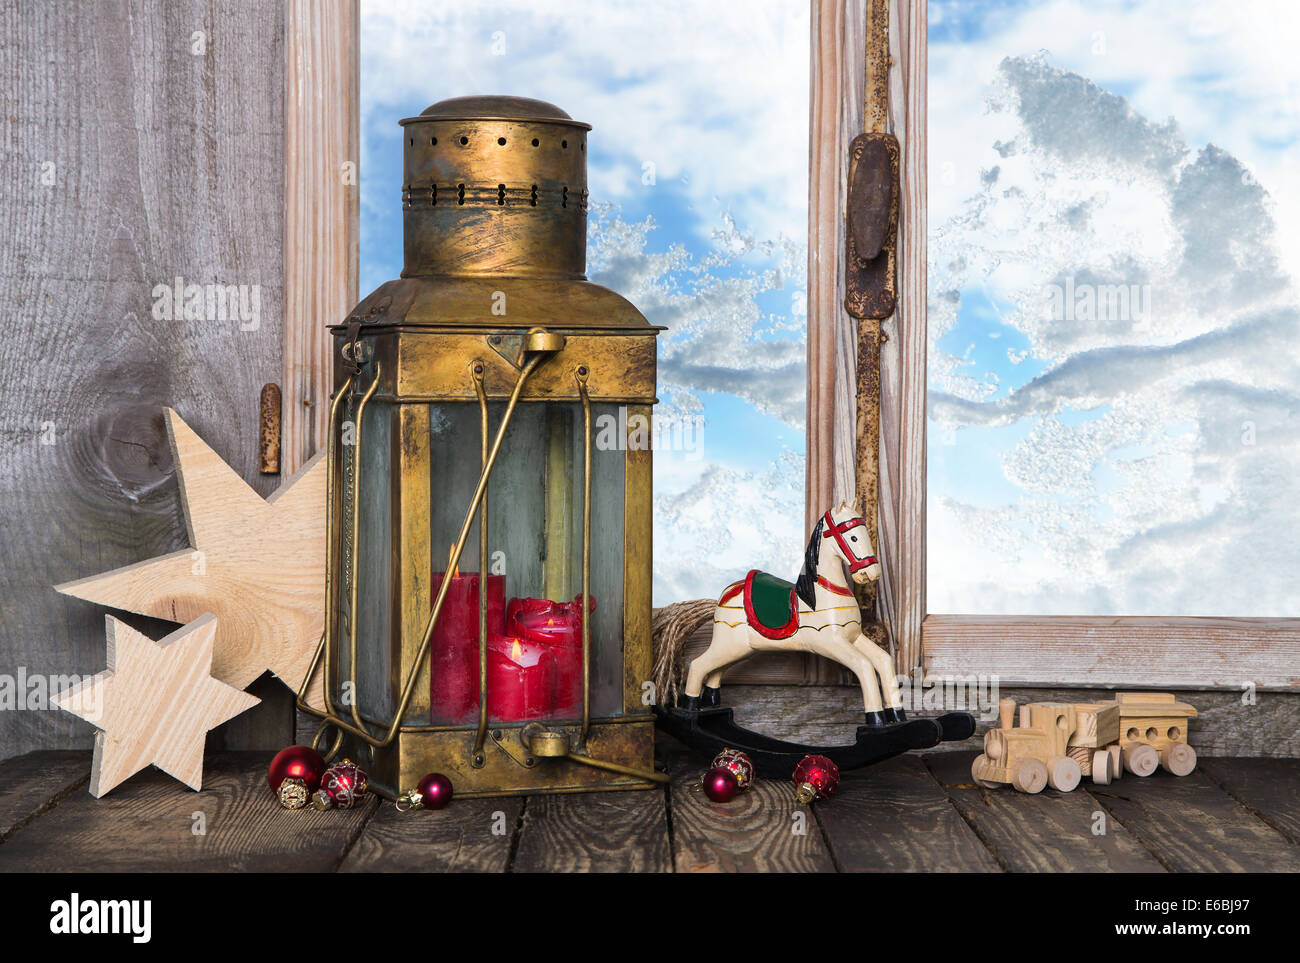 Nostálgico de la antigua decoración de navidad con juguetes antiguos y un viejo linterna con velas en el alféizar de la ventana. Foto de stock